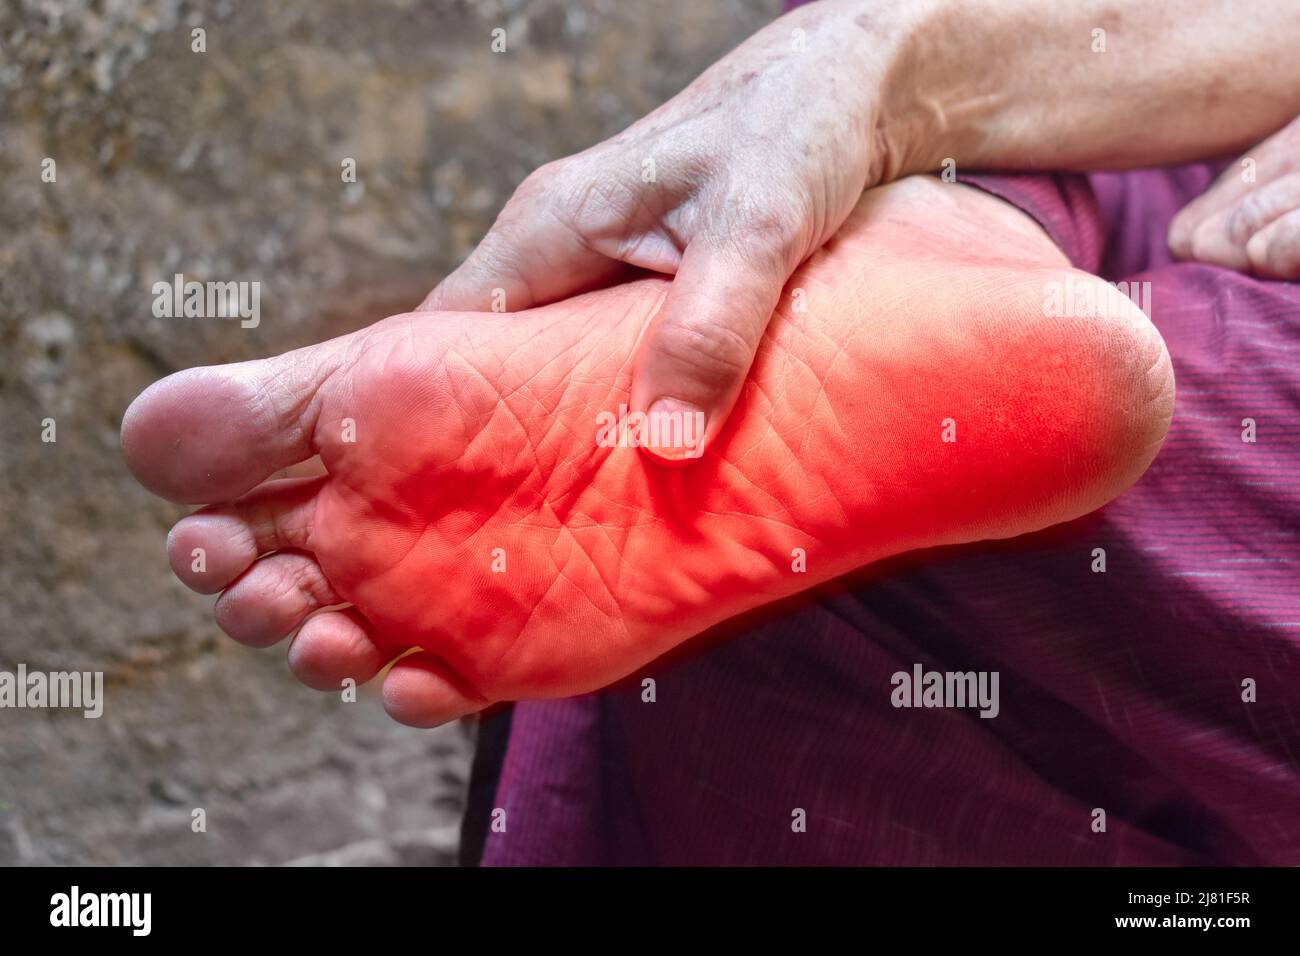 Kribbeln und Brennen im Fuß des asiatischen alten Mannes mit Diabetes.  Fußschmerzen. Sensorische Neuropathie Probleme. Probleme mit den Fußnerven.  Plantare Fasziitis Stockfotografie - Alamy